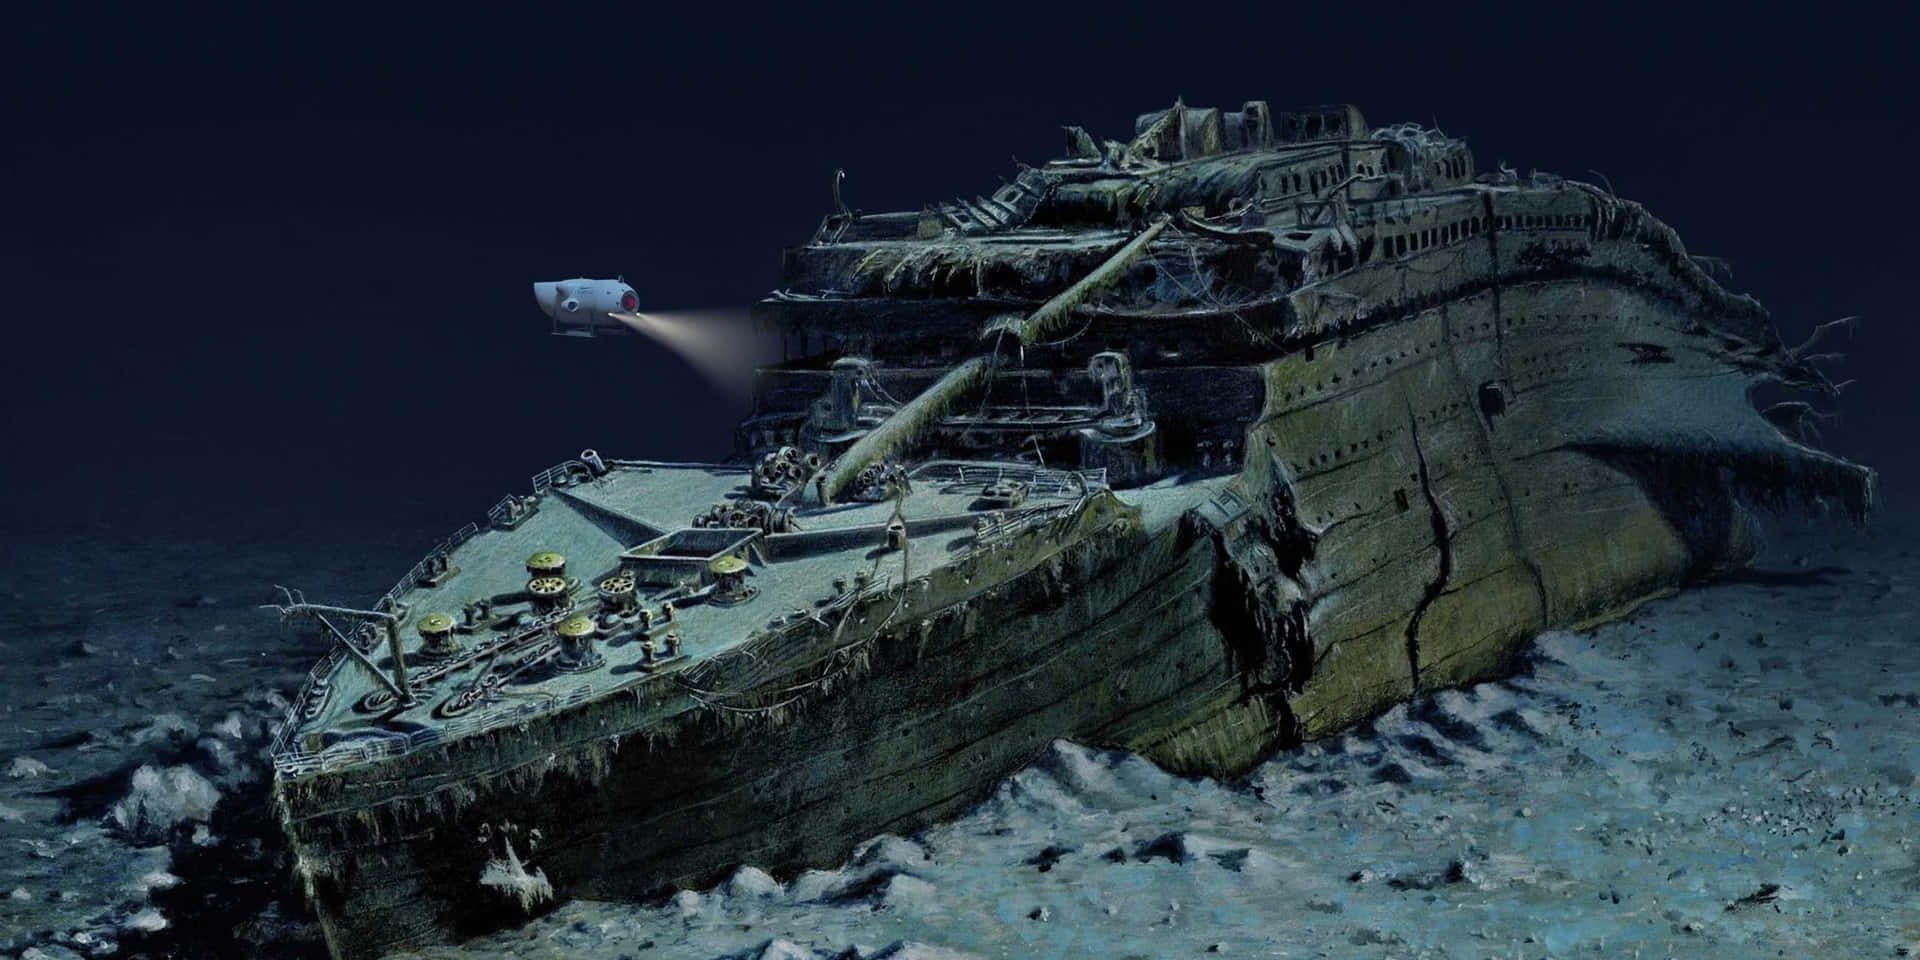 Immagini Subacquee Del Titanic